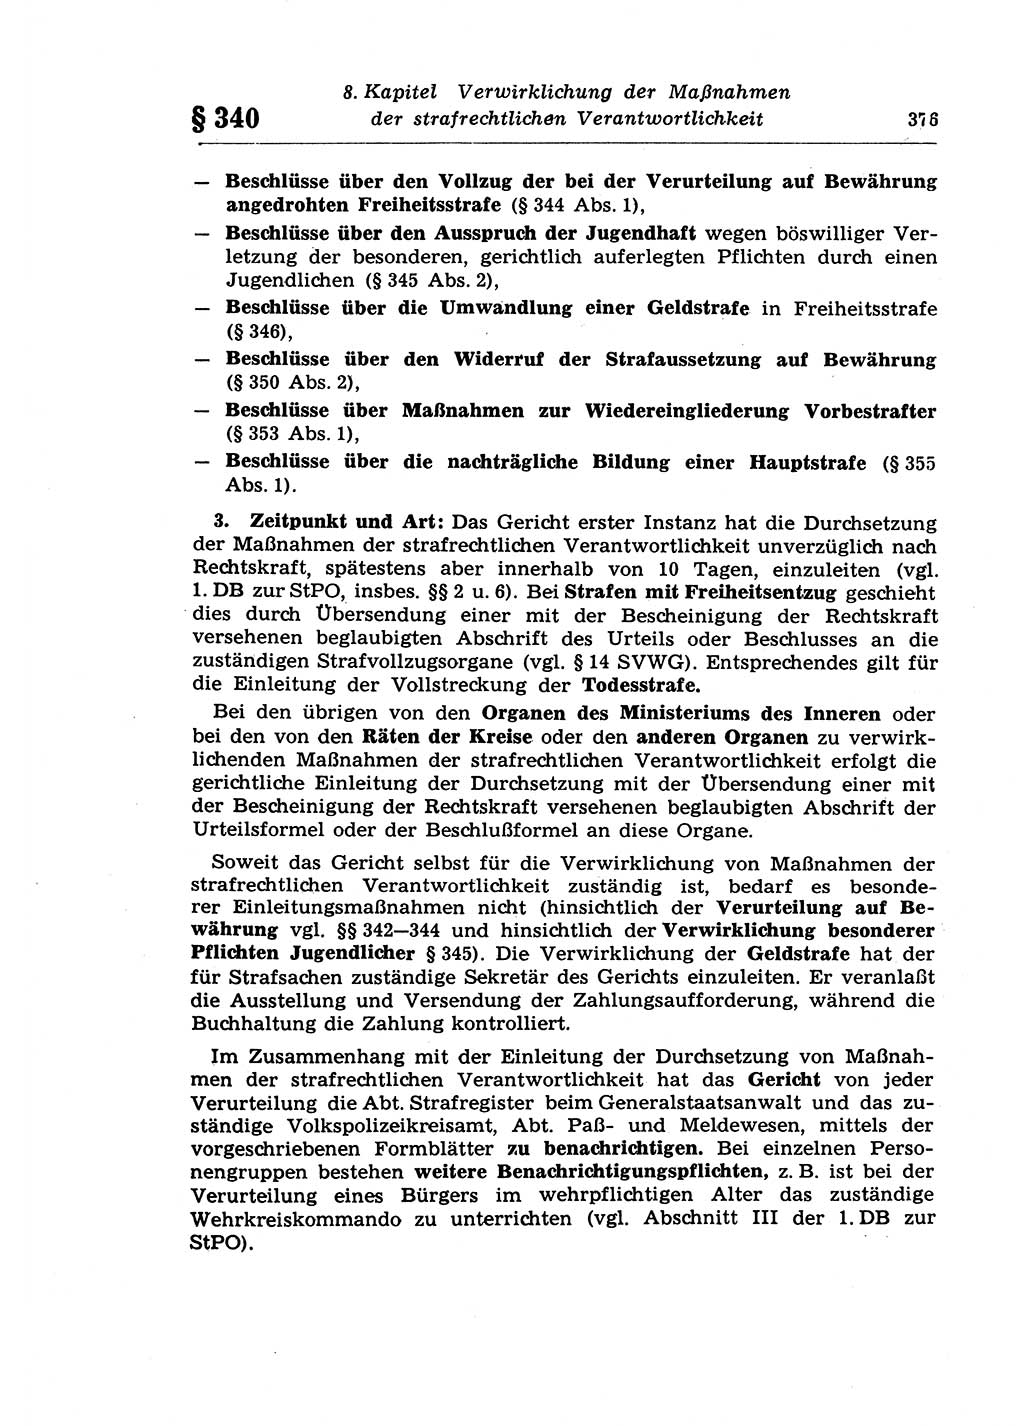 Strafprozeßrecht der DDR (Deutsche Demokratische Republik), Lehrkommentar zur Strafprozeßordnung (StPO) 1968, Seite 376 (Strafprozeßr. DDR Lehrkomm. StPO 19688, S. 376)